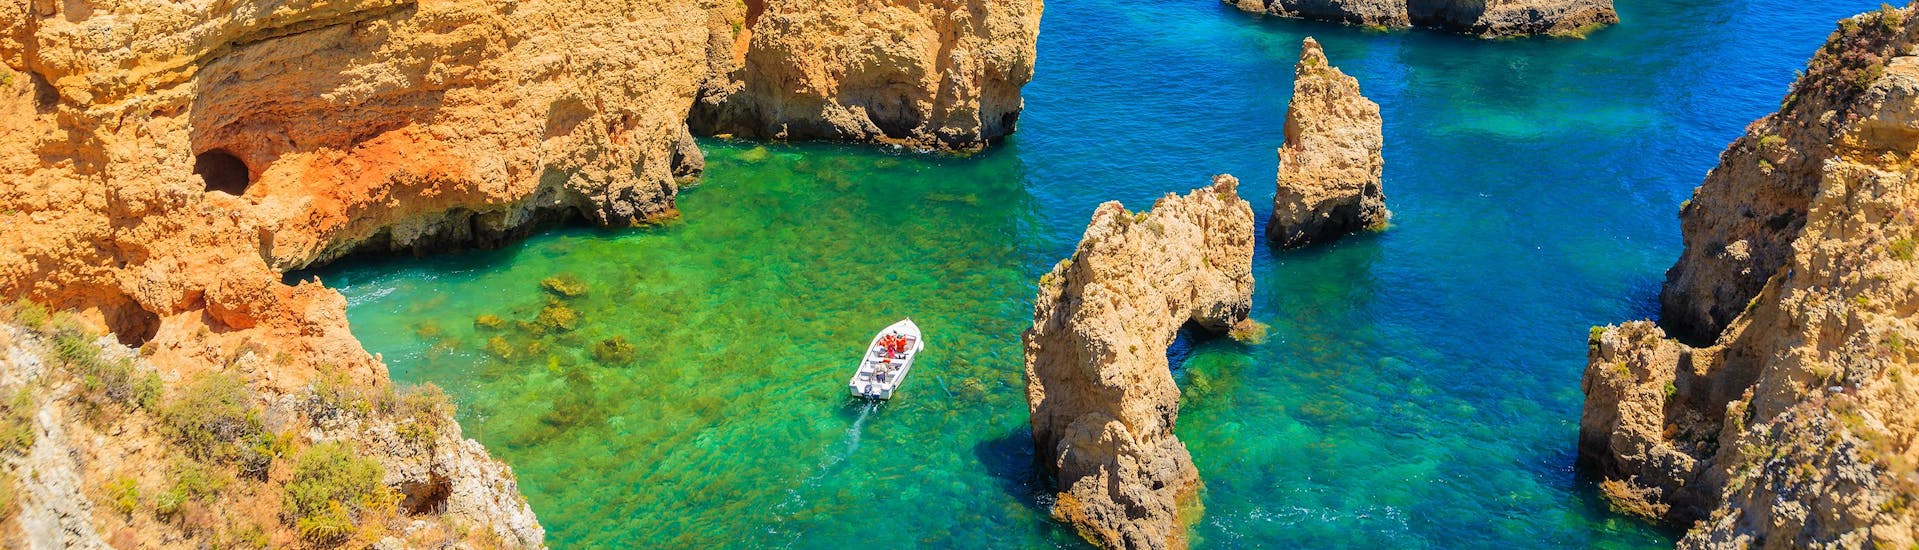 Vista de las famosas rocas de Ponta da Piedade en Portugal, donde se realizan una serie de paseos en barco a lo largo de la costa.